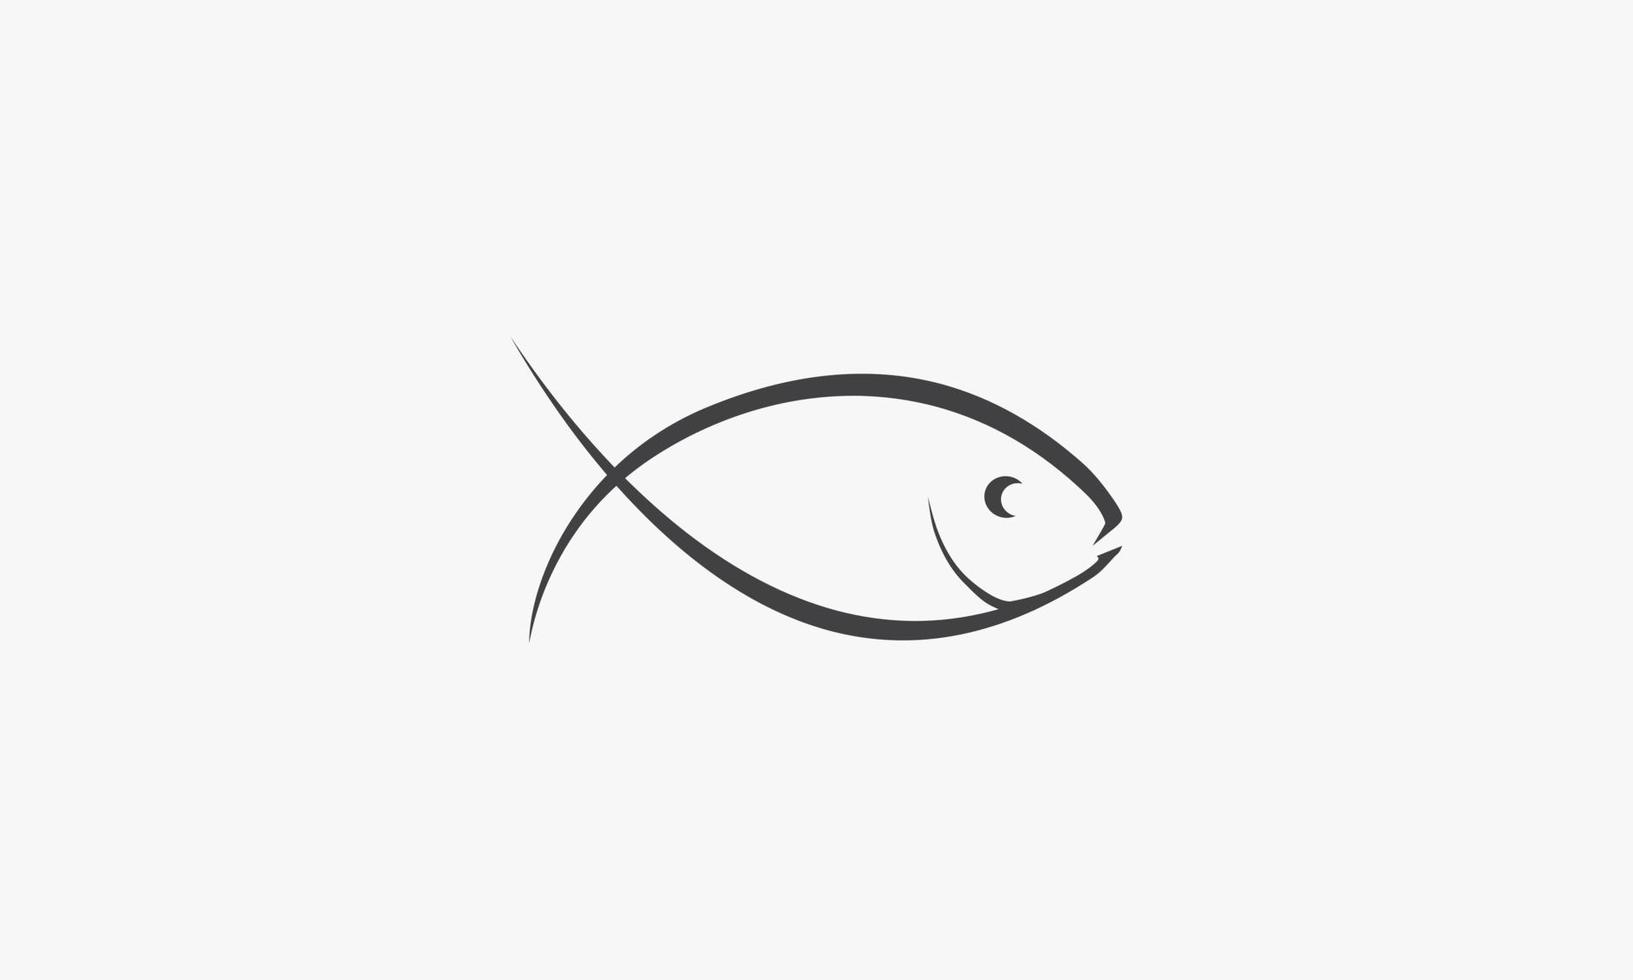 pesce illustrazione vettoriale su sfondo bianco. icona creativa.